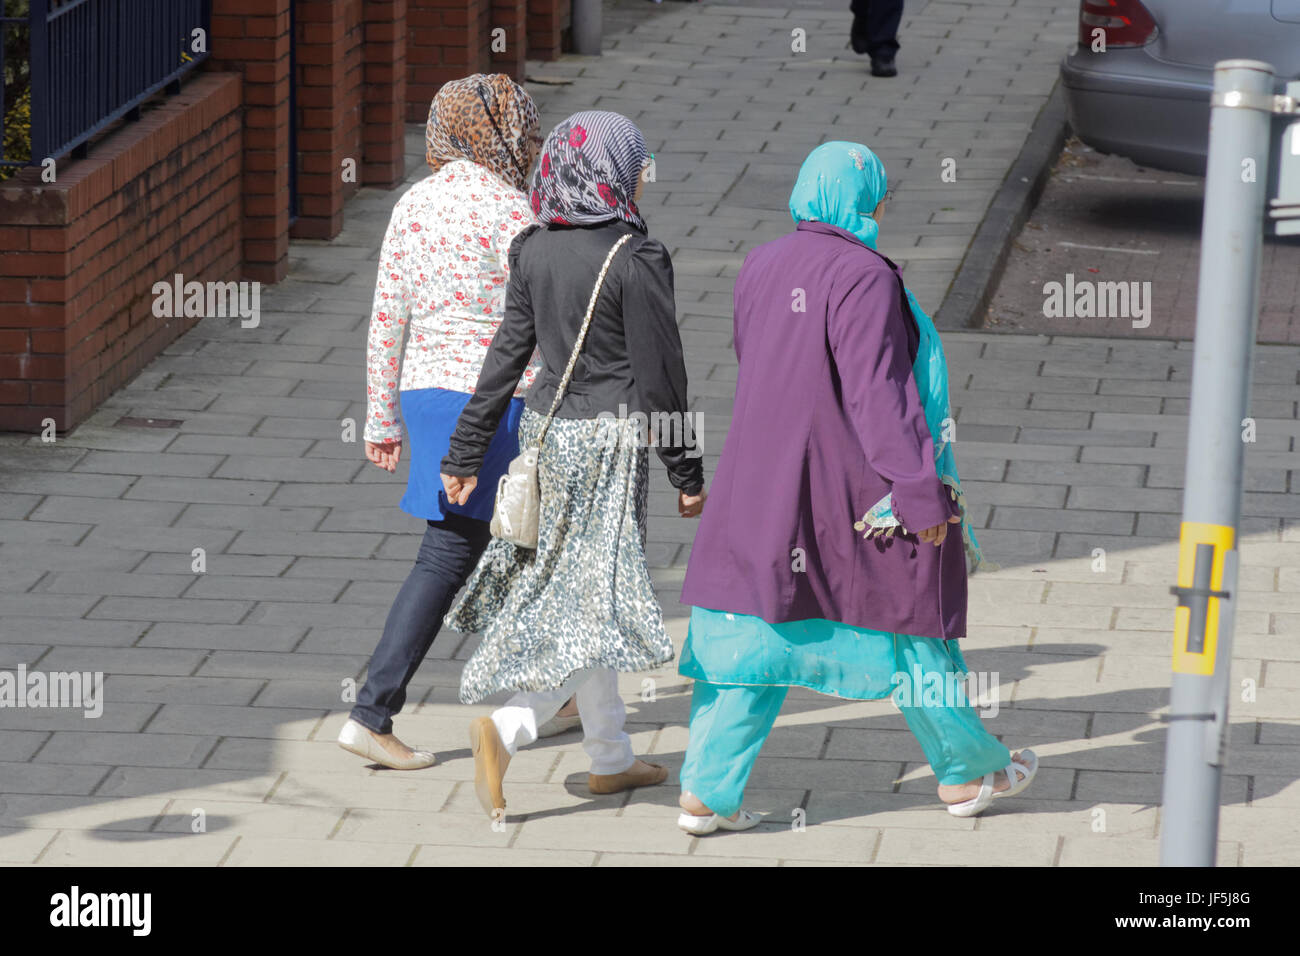 Asiatische Familie Flüchtling gekleidet Hijab Schal auf Straße in der UK alltägliche Szene drei Mädchen einkaufen Stockfoto